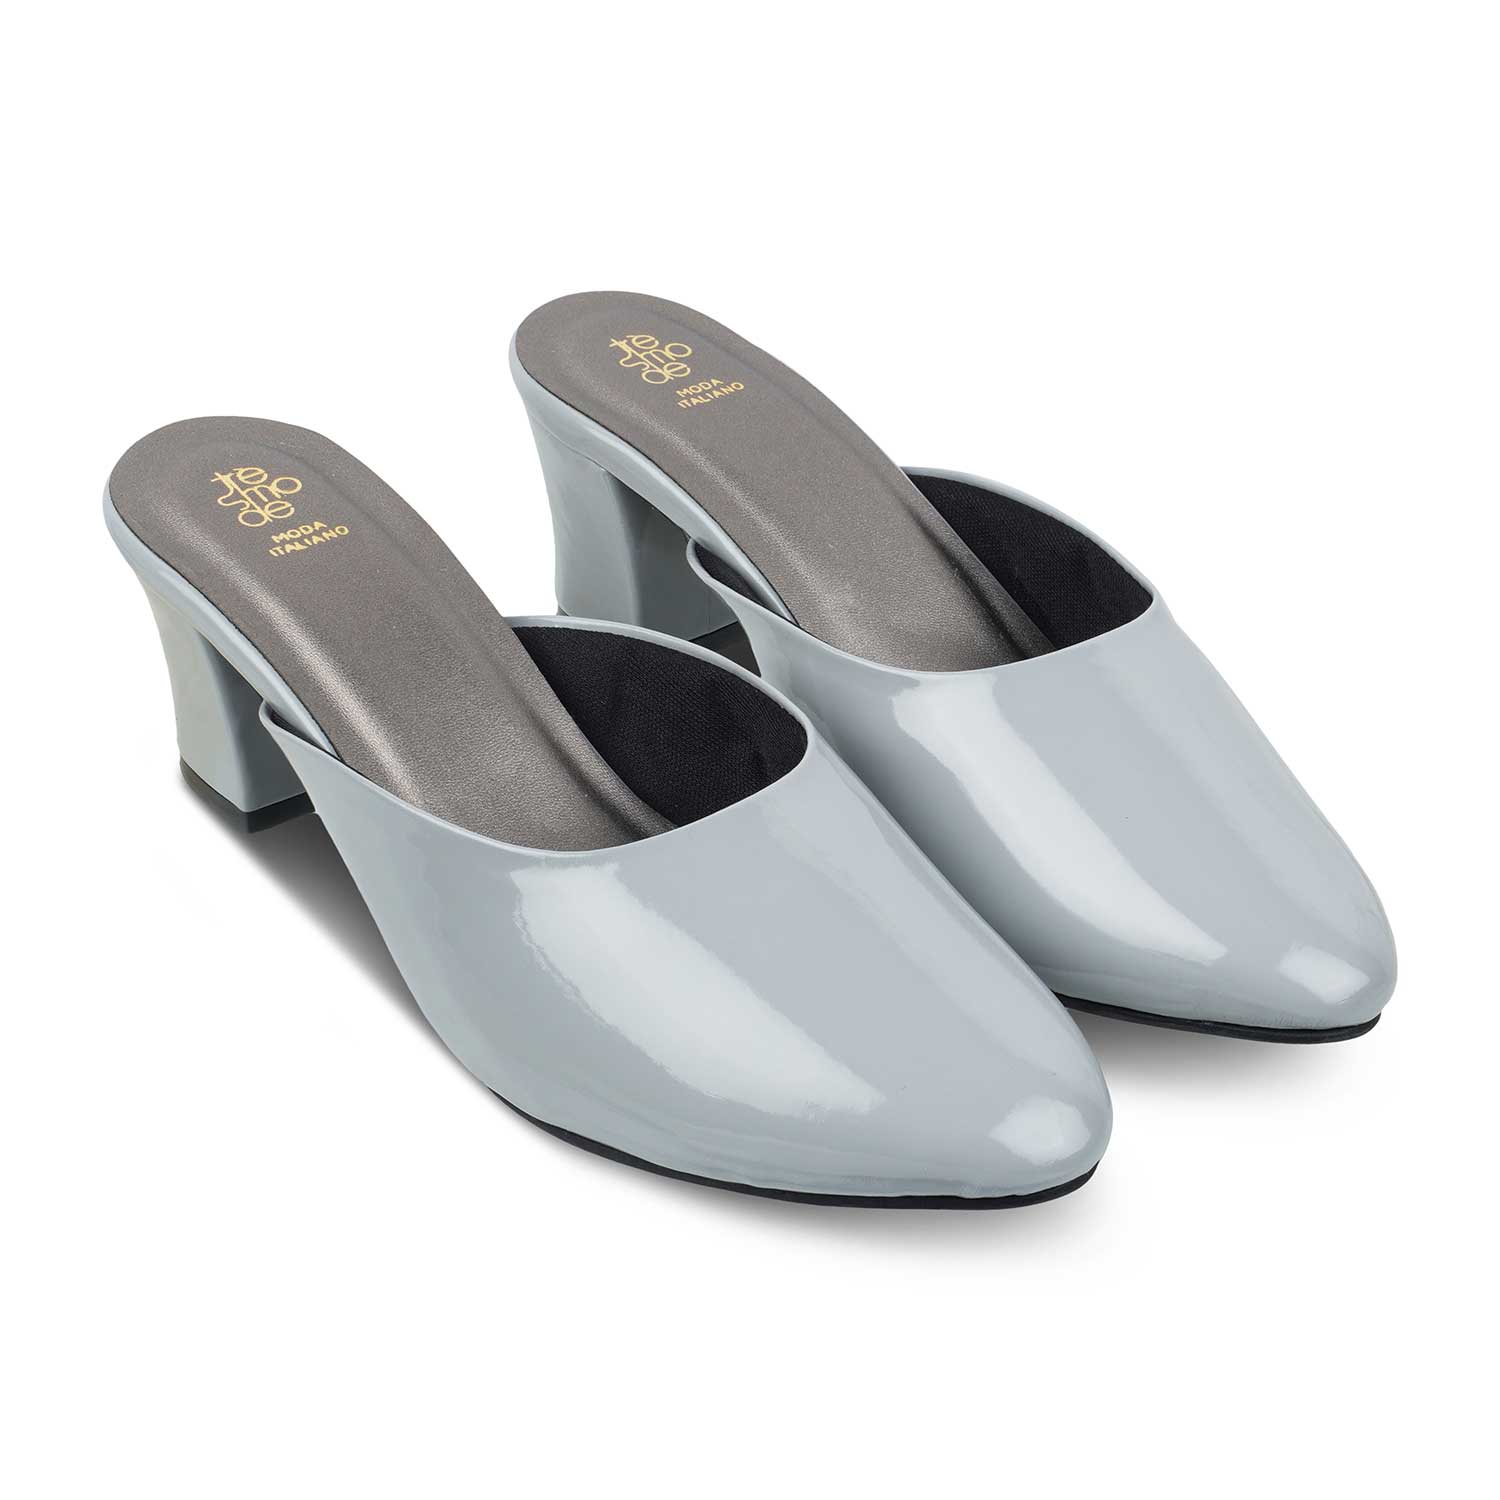 The Carbo Grey Women's Dress Block Heel Sandals Tresmode - Tresmode